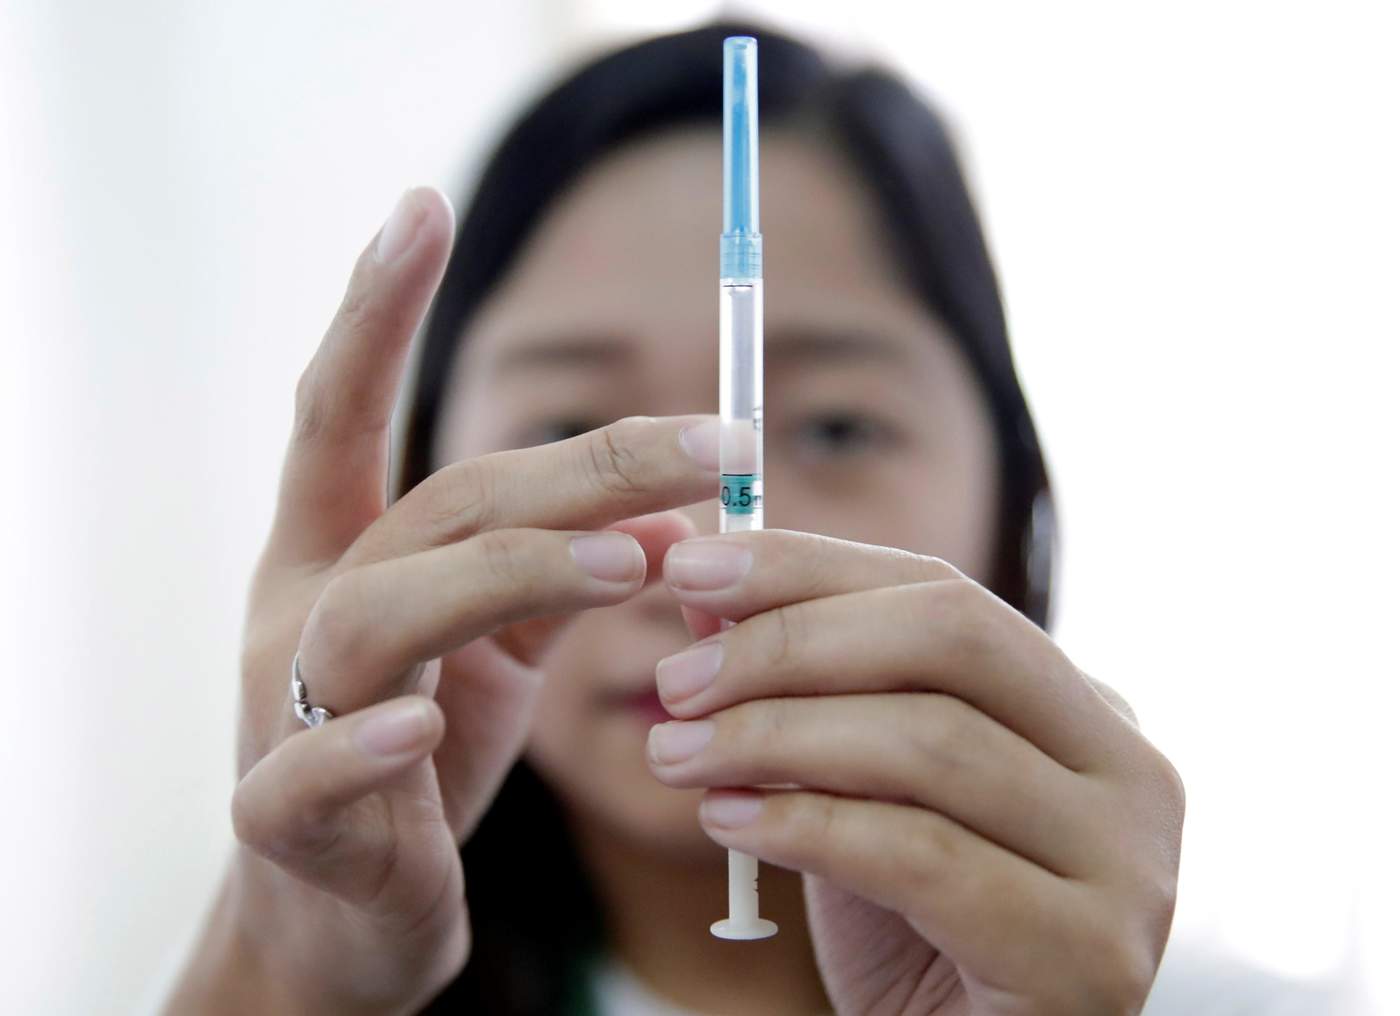 Con la intención de contener el brote para abril, las autoridades sanitarias emprendieron la semana pasada una campaña de inmunización masiva en Manila, donde ya han sido vacunados unos 130,000 niños de los 450,000 que se calcula que lo necesitan. (ARCHIVO)